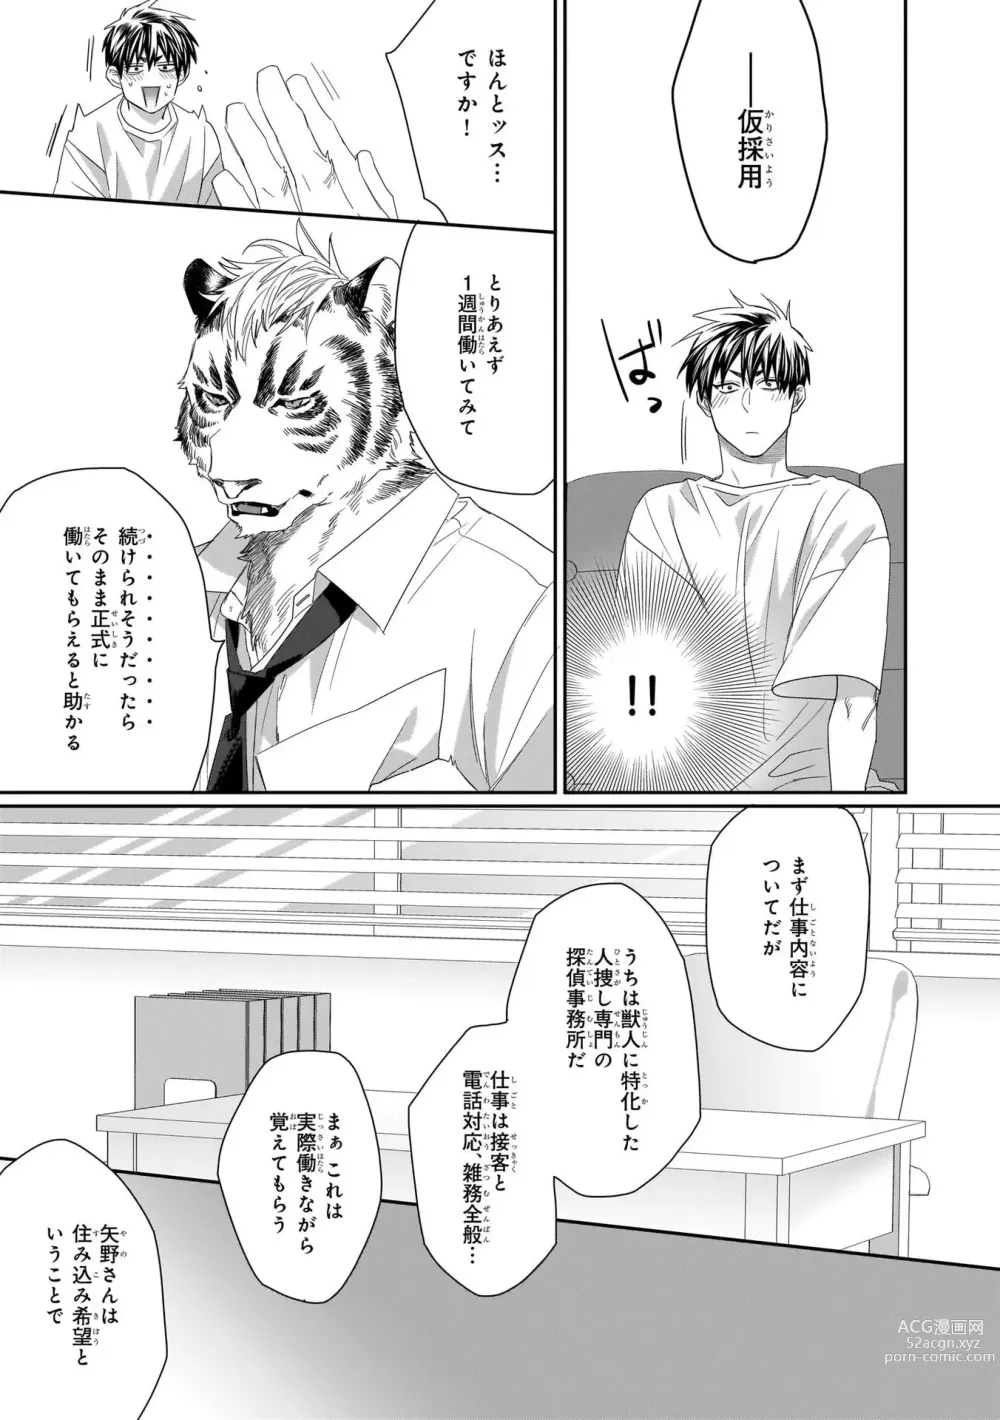 Page 15 of manga Torano Tantei Jimusho e Youkoso 1-5